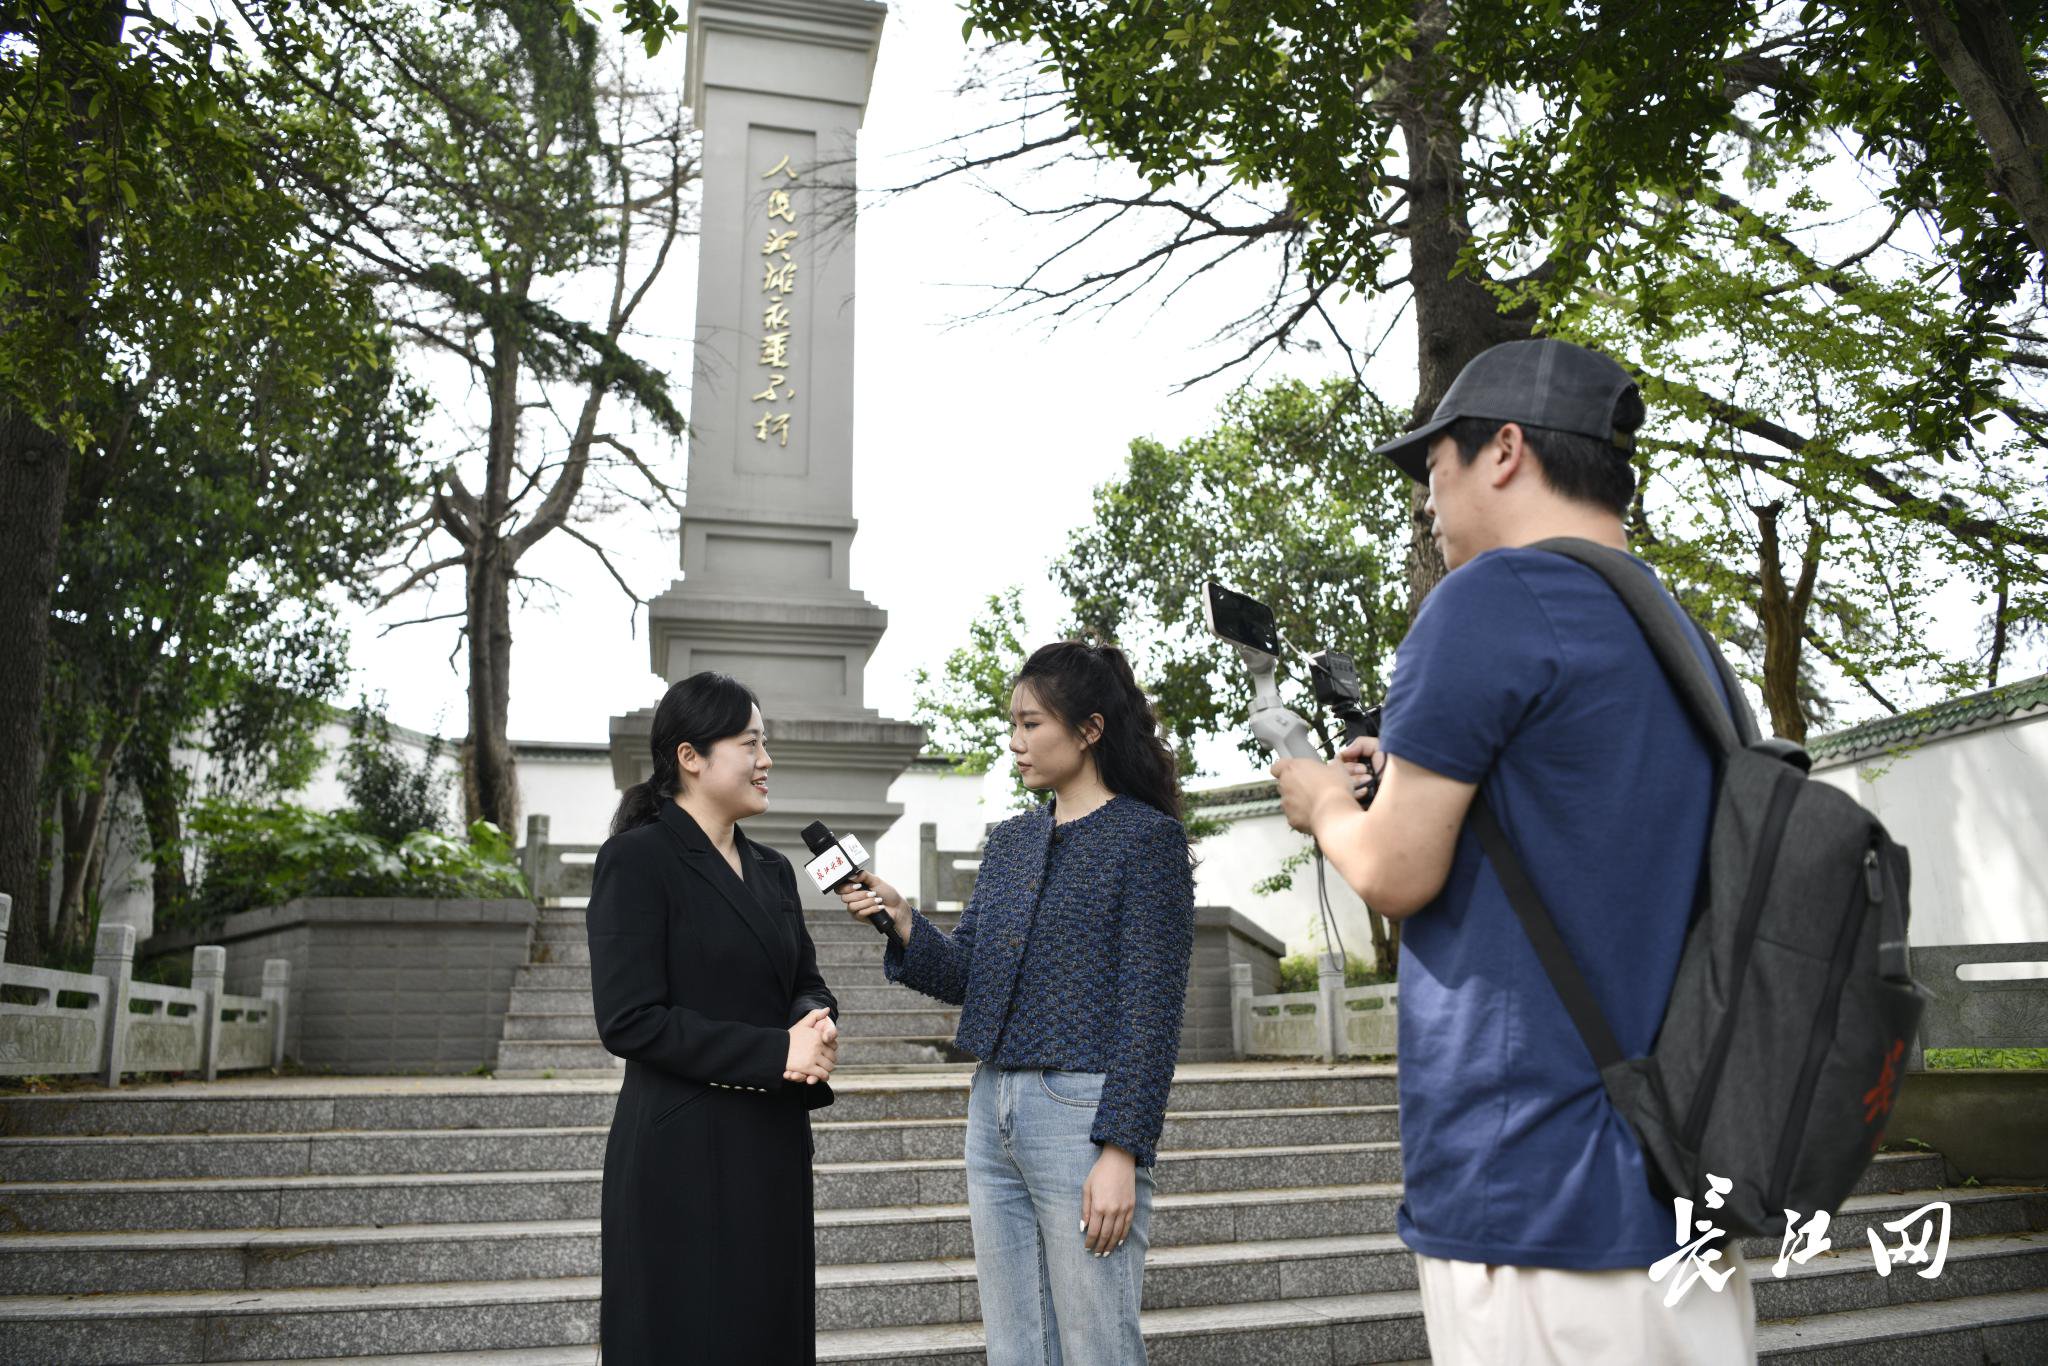 渡江战役纪念馆特级讲解员石慧（左一）在直播中讲述渡江战役的故事。长江网记者吕诗文 摄